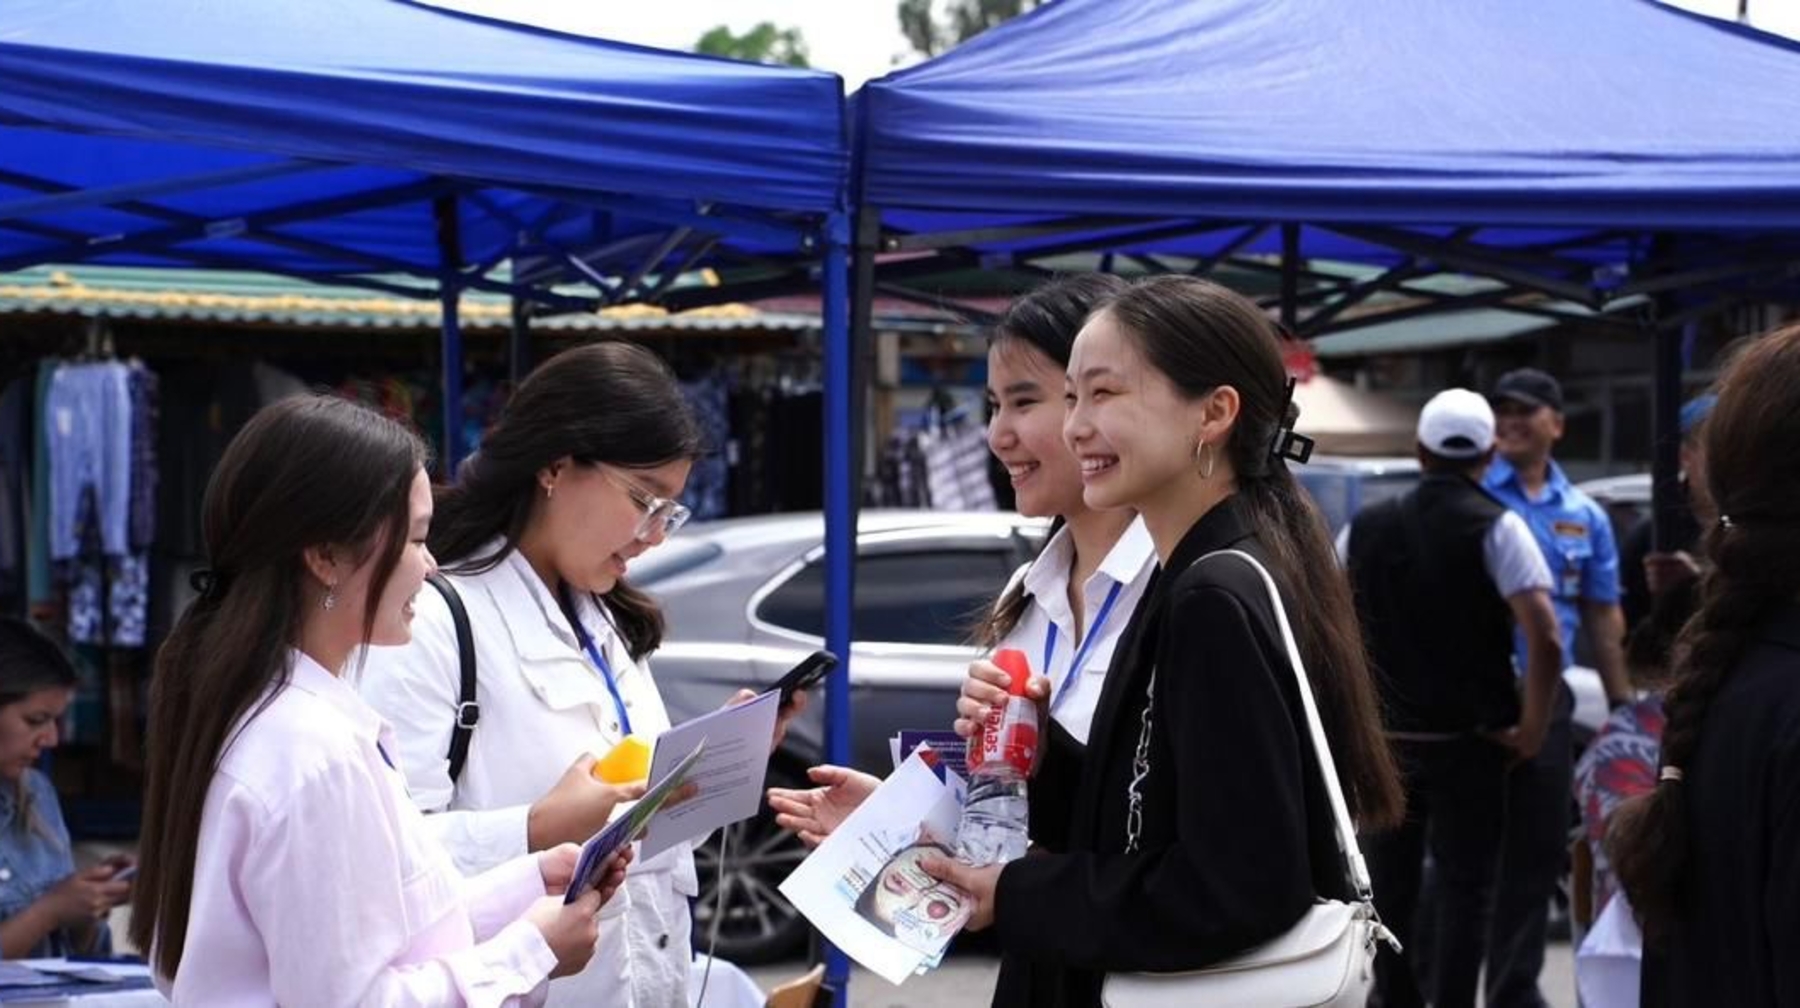 В Алматы уменьшилась доля молодежи категории NEET